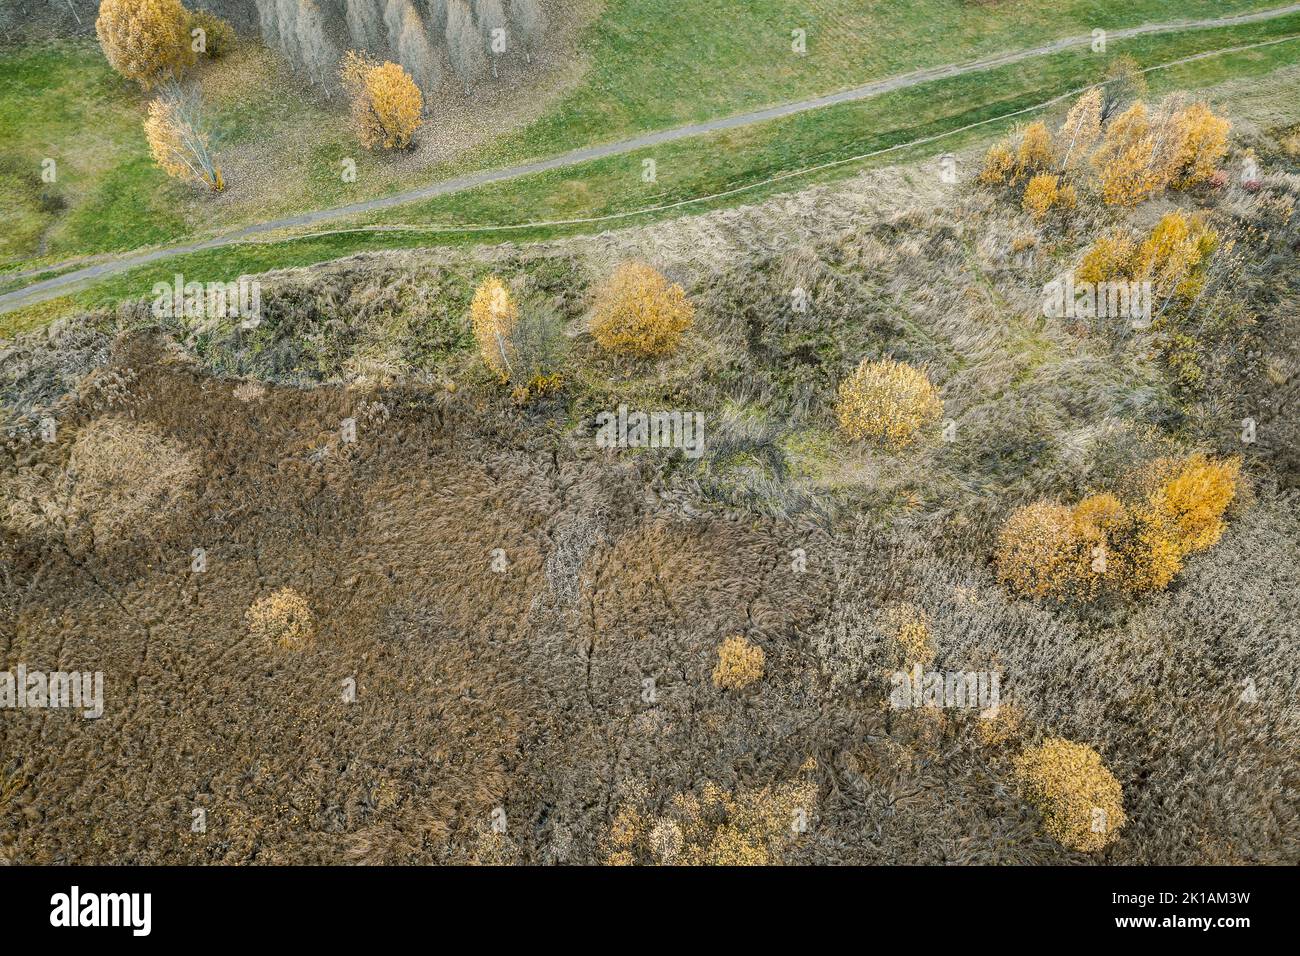 paisaje otoñal con sendero a lo largo de la zona pantanosa. fotografía de aviones no tripulados. Foto de stock